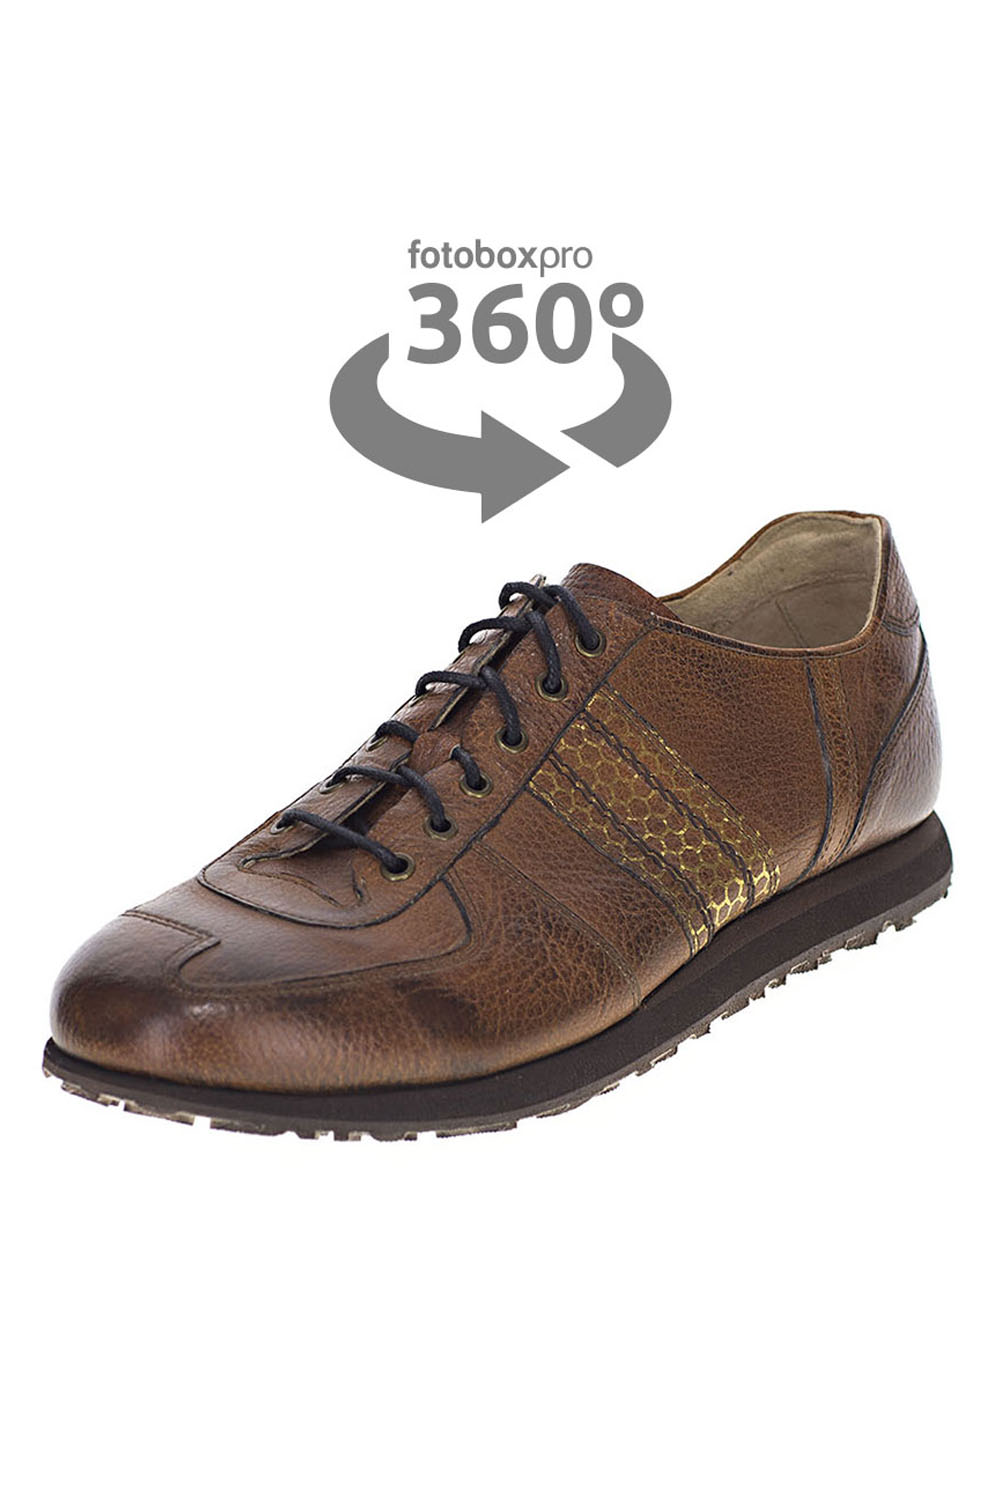 360-derece-ayakkabi-fotograf-cekimi_0001_Layer-2 Tekstil Fotoğraf Çekimi